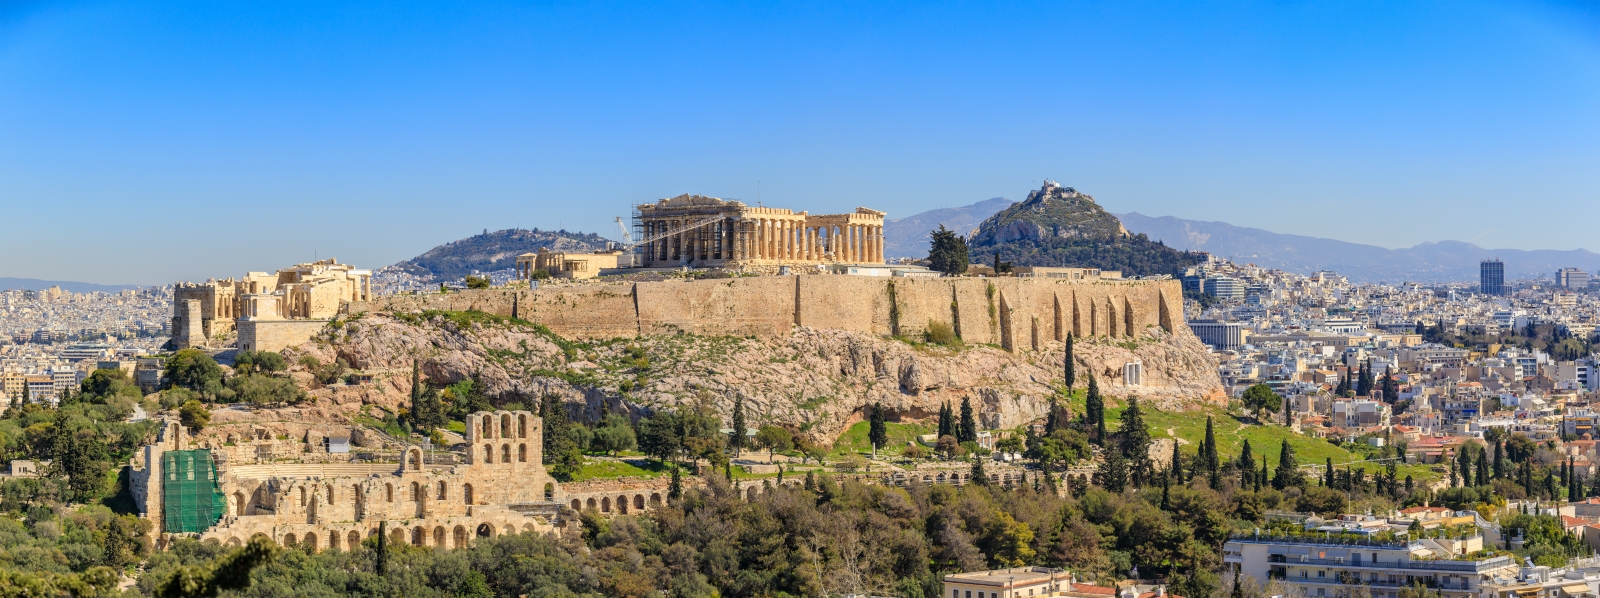 Вид на городской пейзаж Афин с Акрополем